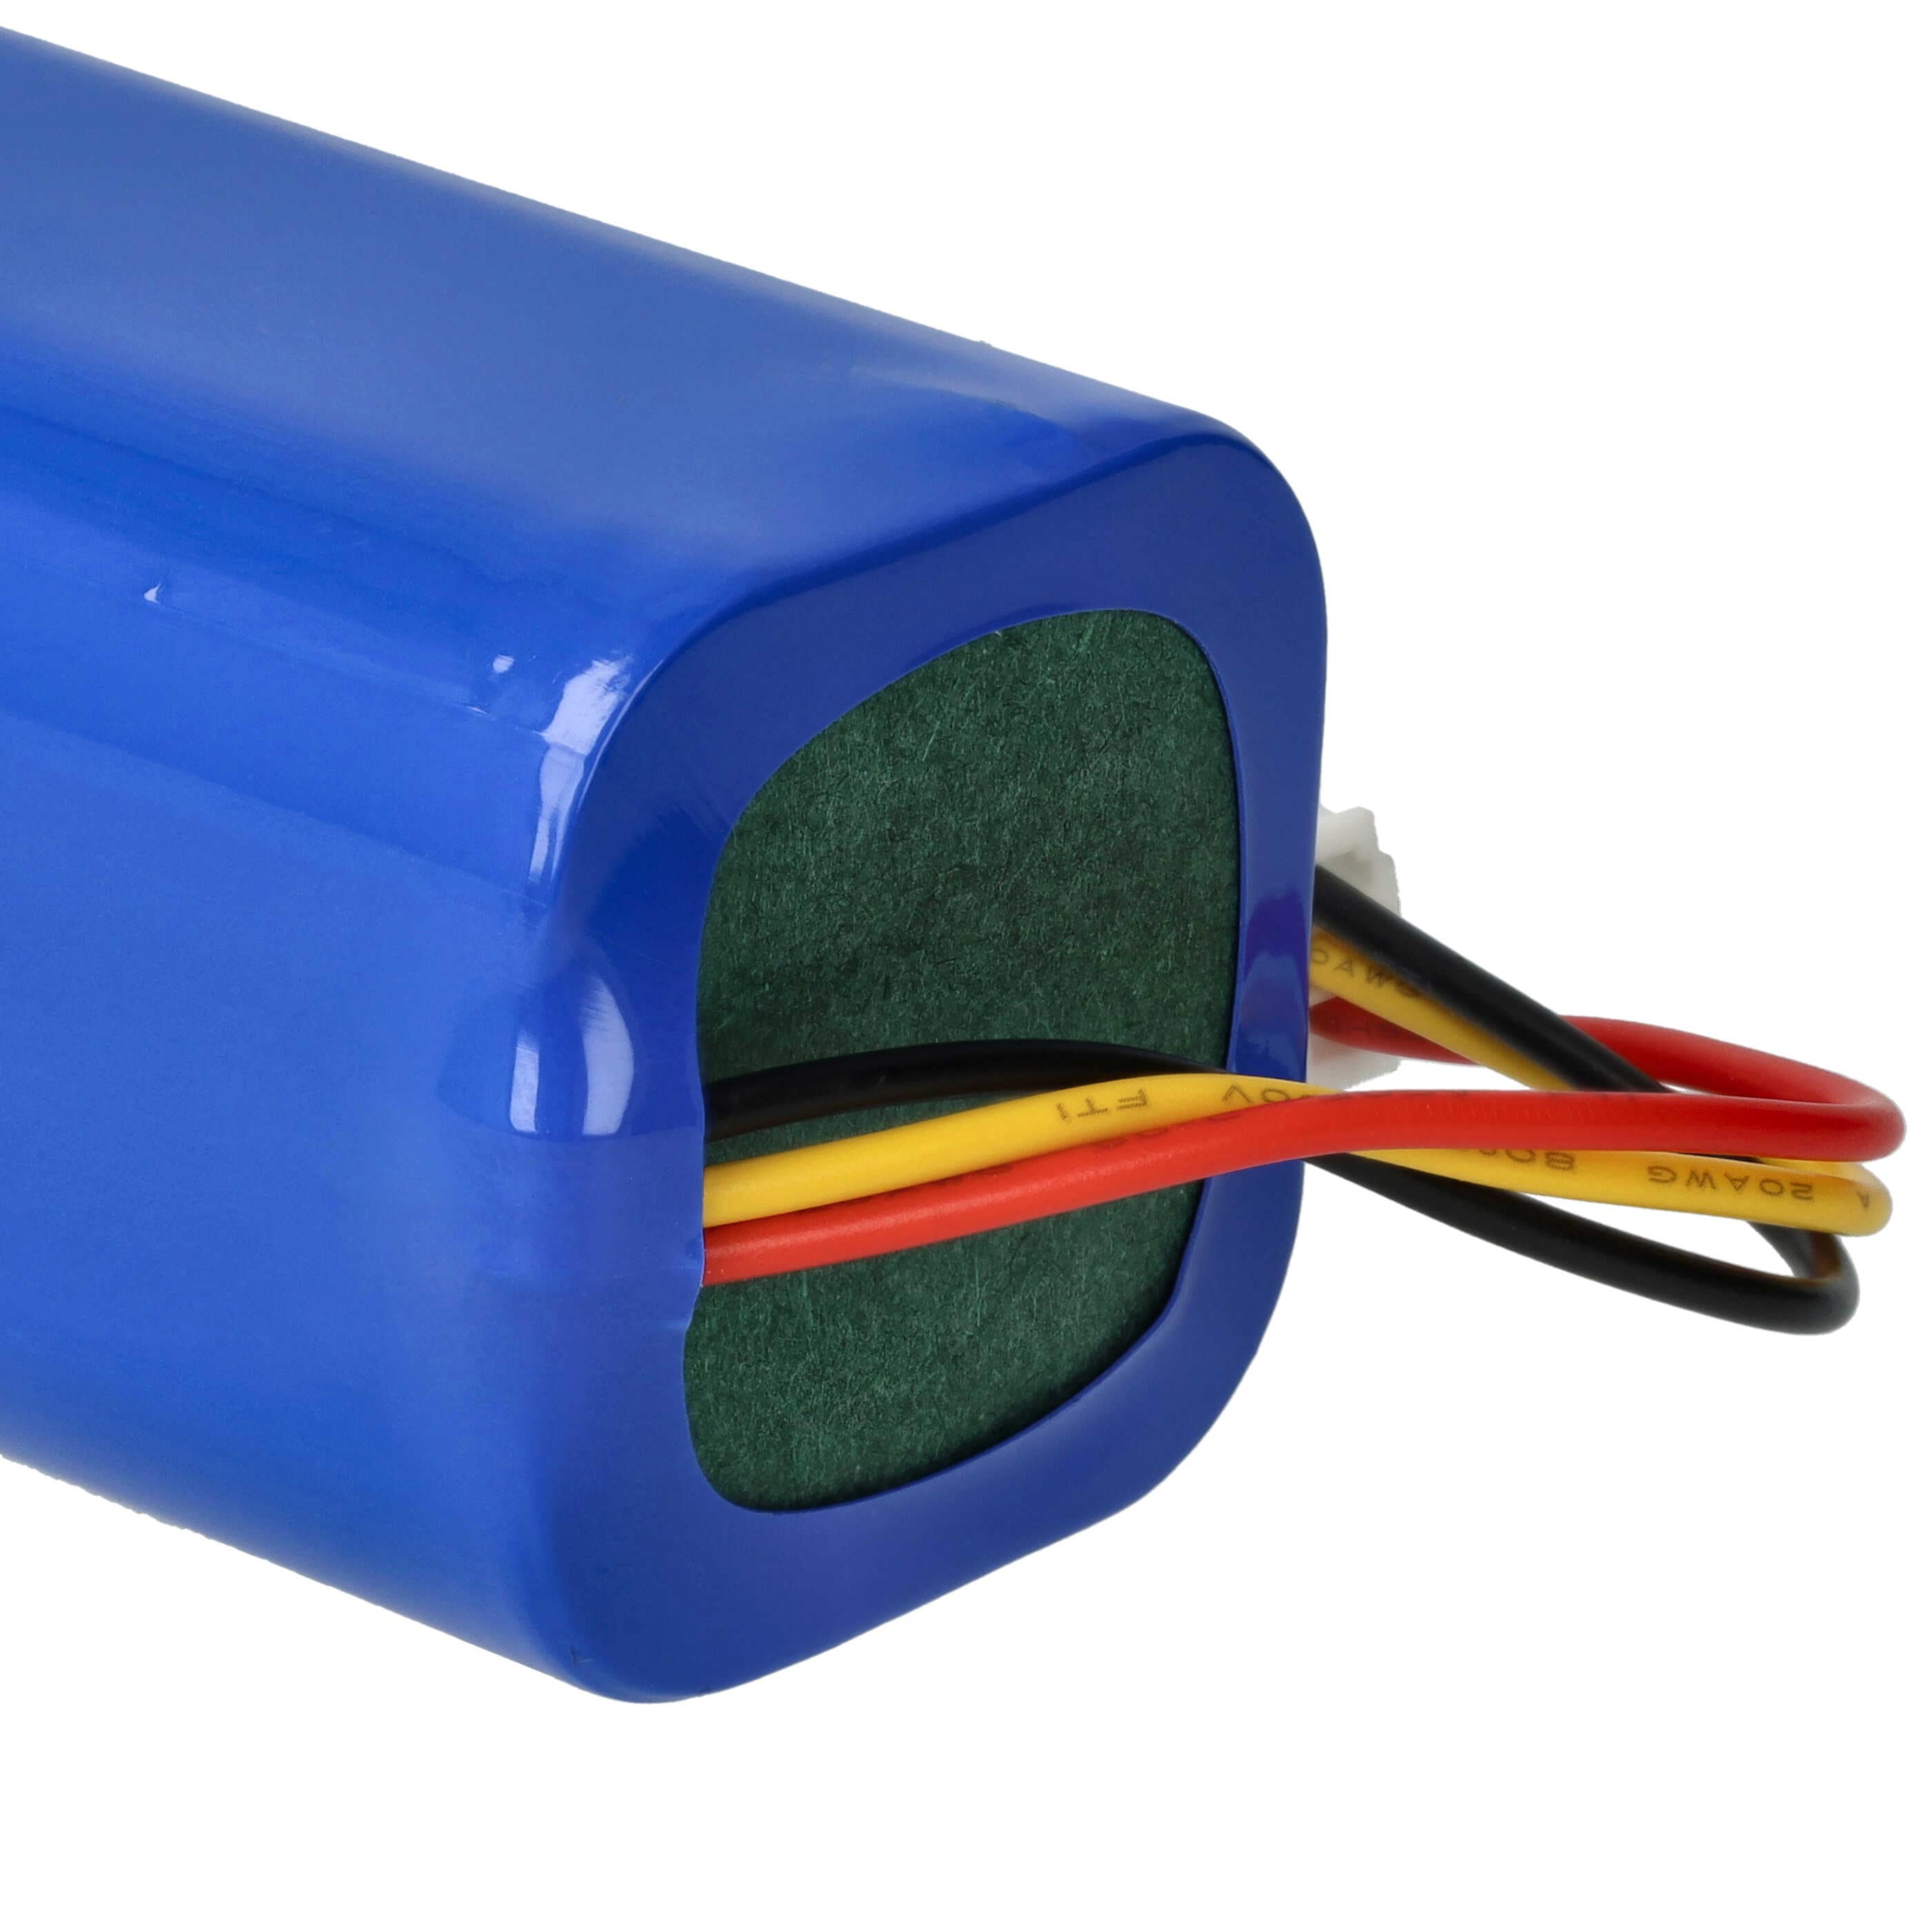 Batterie remplace Blaupunkt 6.60.40.02-0, D071-INR-CH-4S1P pour robot aspirateur - 3200mAh 14,4V Li-ion